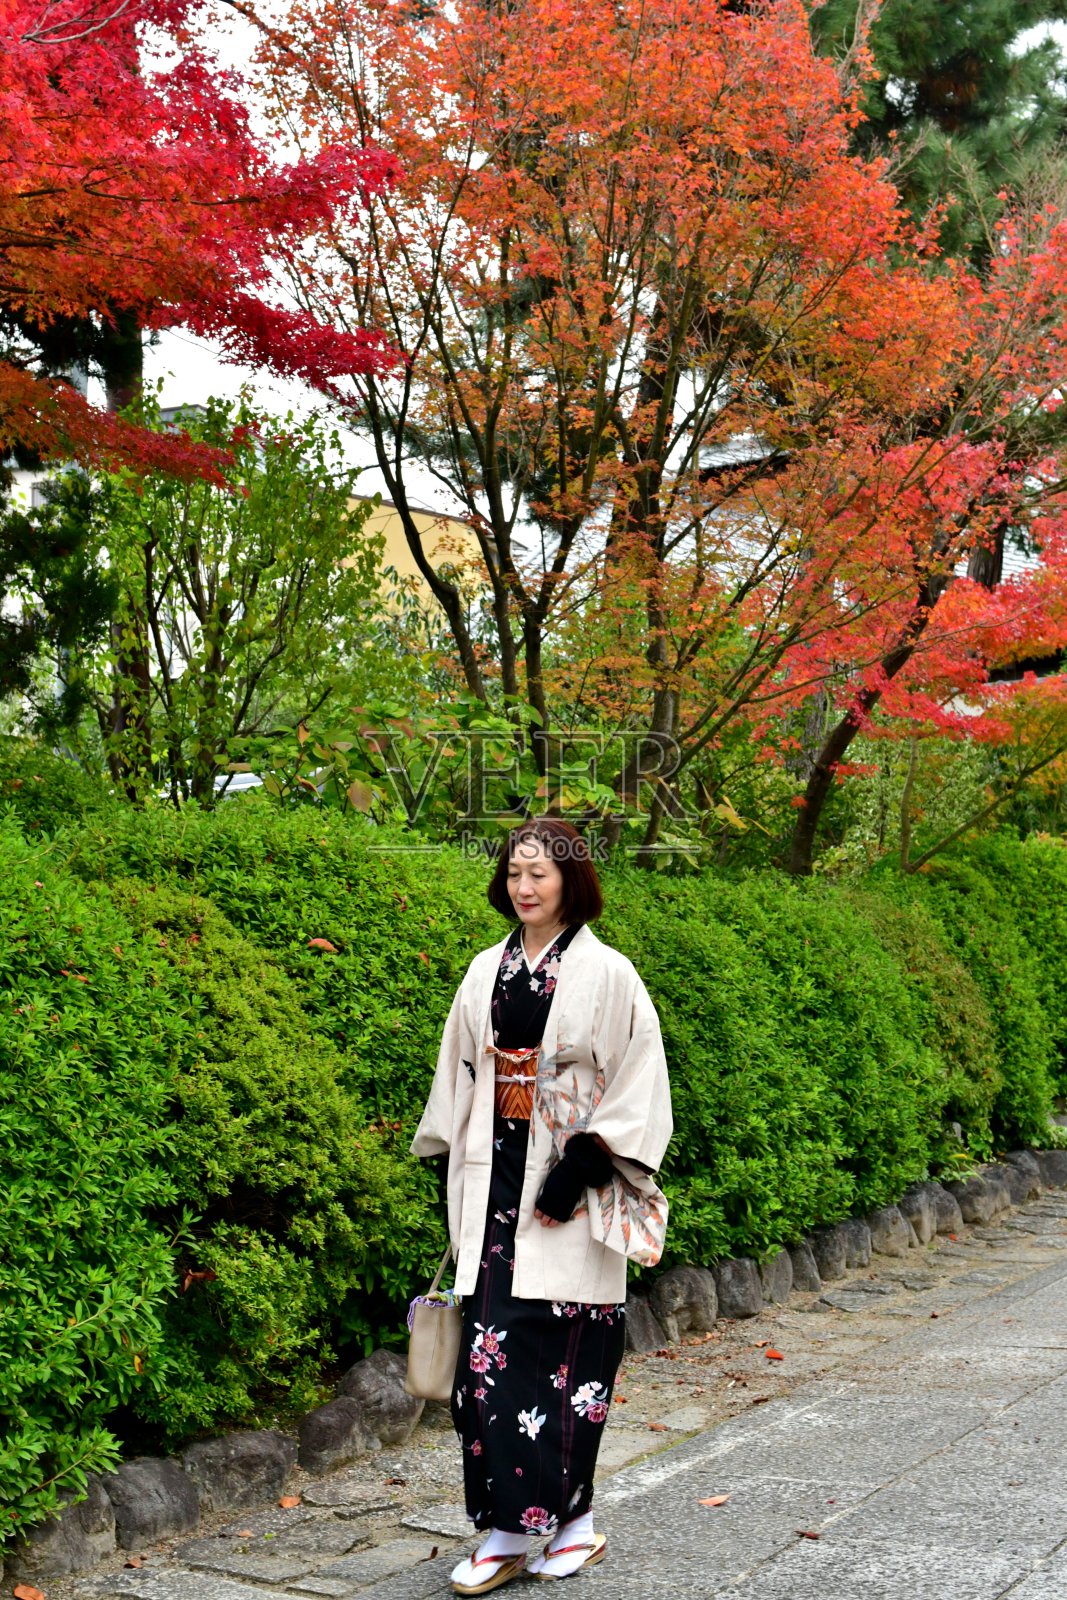 京都，穿着和服的日本妇女走在秋色街道上照片摄影图片